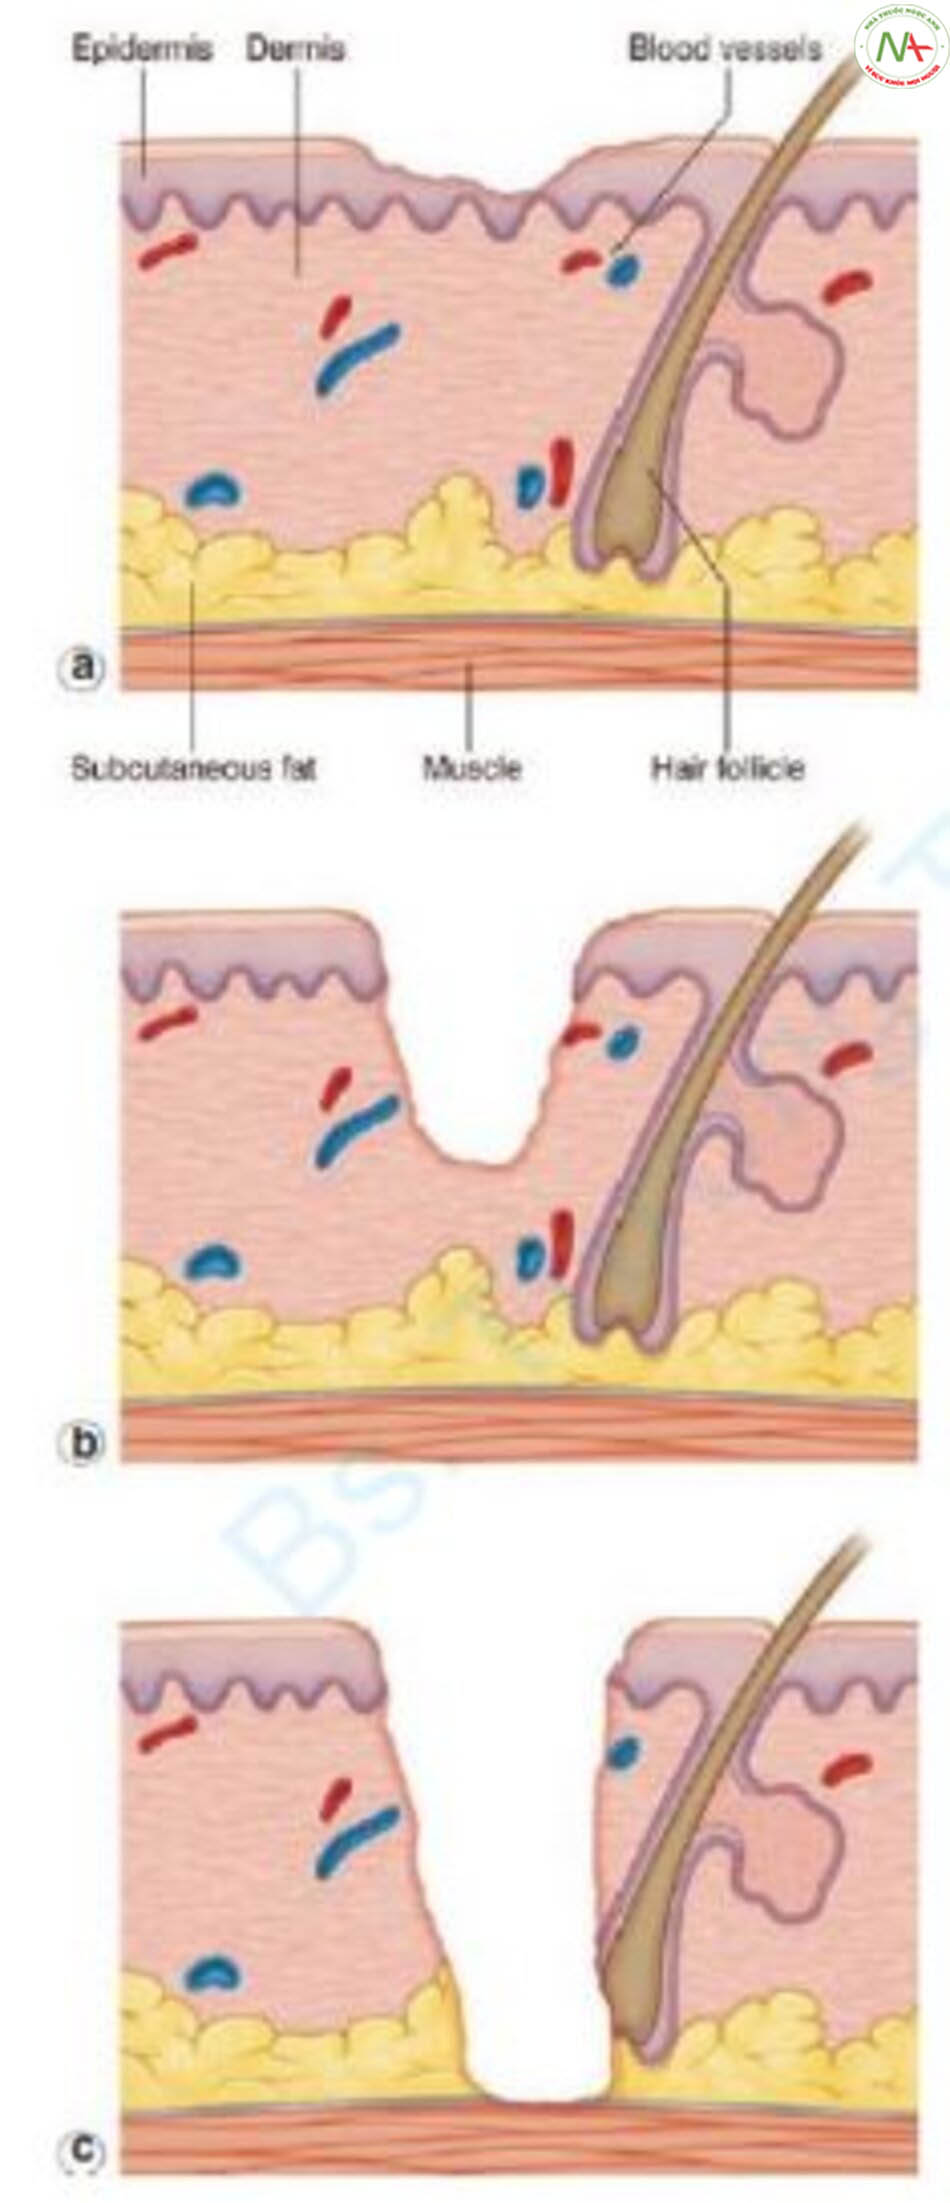 Hình 7.3 So sánh các vết thương do trợt, một phần độ dày và toàn độ dày da. (a) Trợt: chỉ mất lớp biểu bì. (b) Vết thương một phần độ dày: thiếu lớp biểu bì và một phần của lớp bì nhưng vẫn còn một số cấu trúc phụ. (c) Vết thương toàn độ dày da: thiếu tất cả lớp biểu bì và lớp bì cùng với các cấu trúc phần phụ. Da mất toàn bộ độ dày ảnh hưởng đến mô mỡ dưới da và có thể kéo dài xuống nhưng không xuyên qua lớp cơ bên dưới.